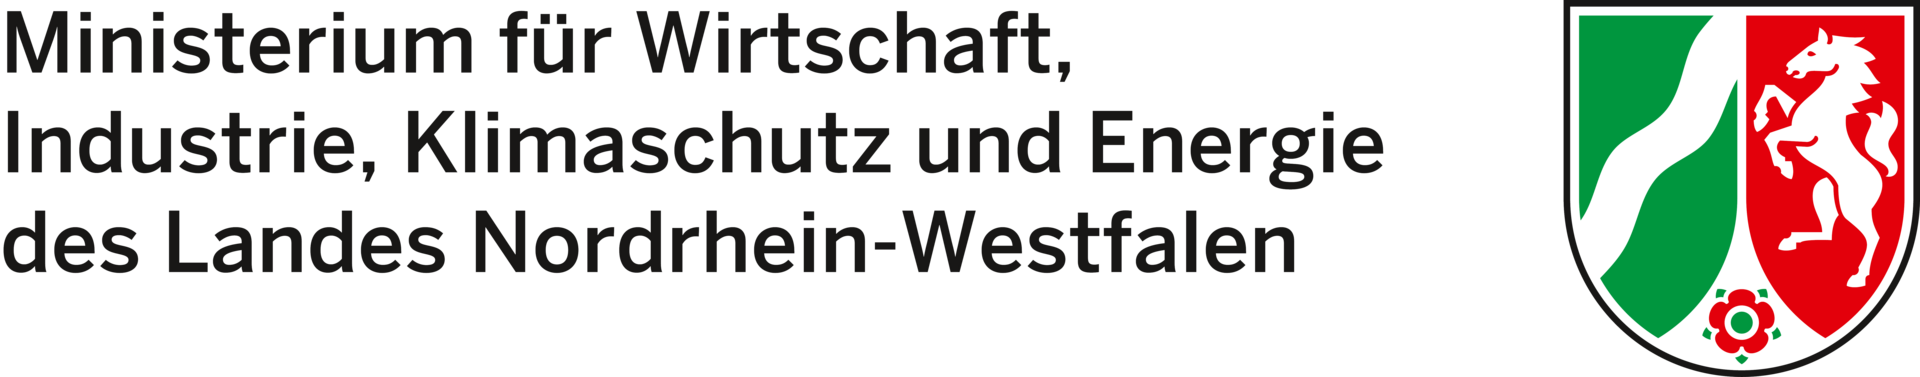 Logo MWIKE NRW